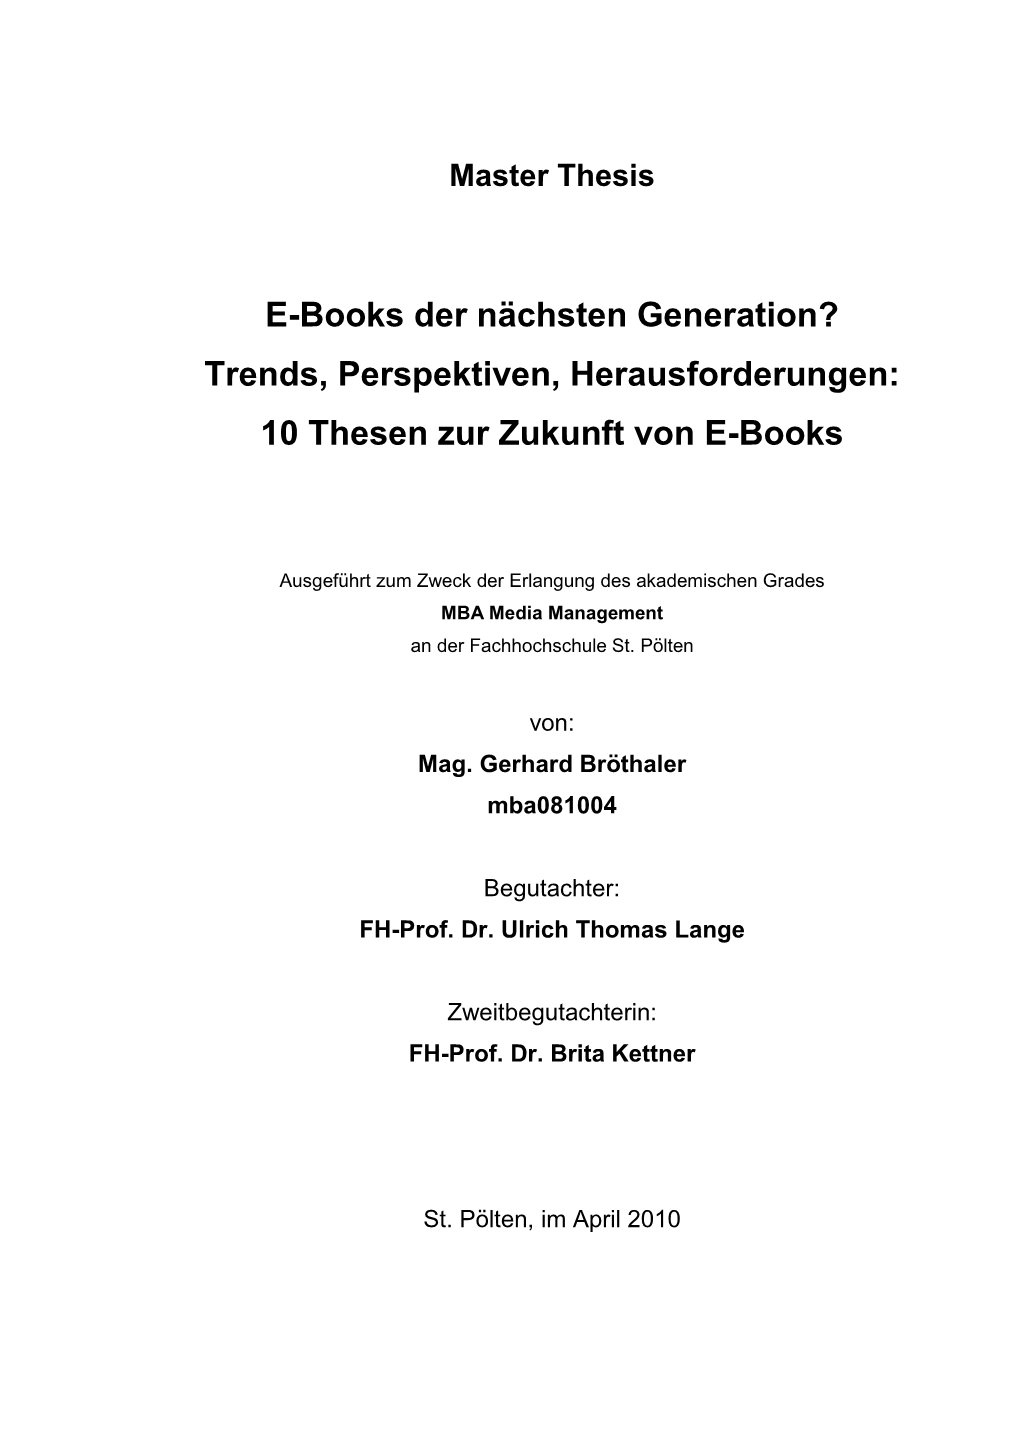 10 Thesen Zur Zukunft Von E-Books